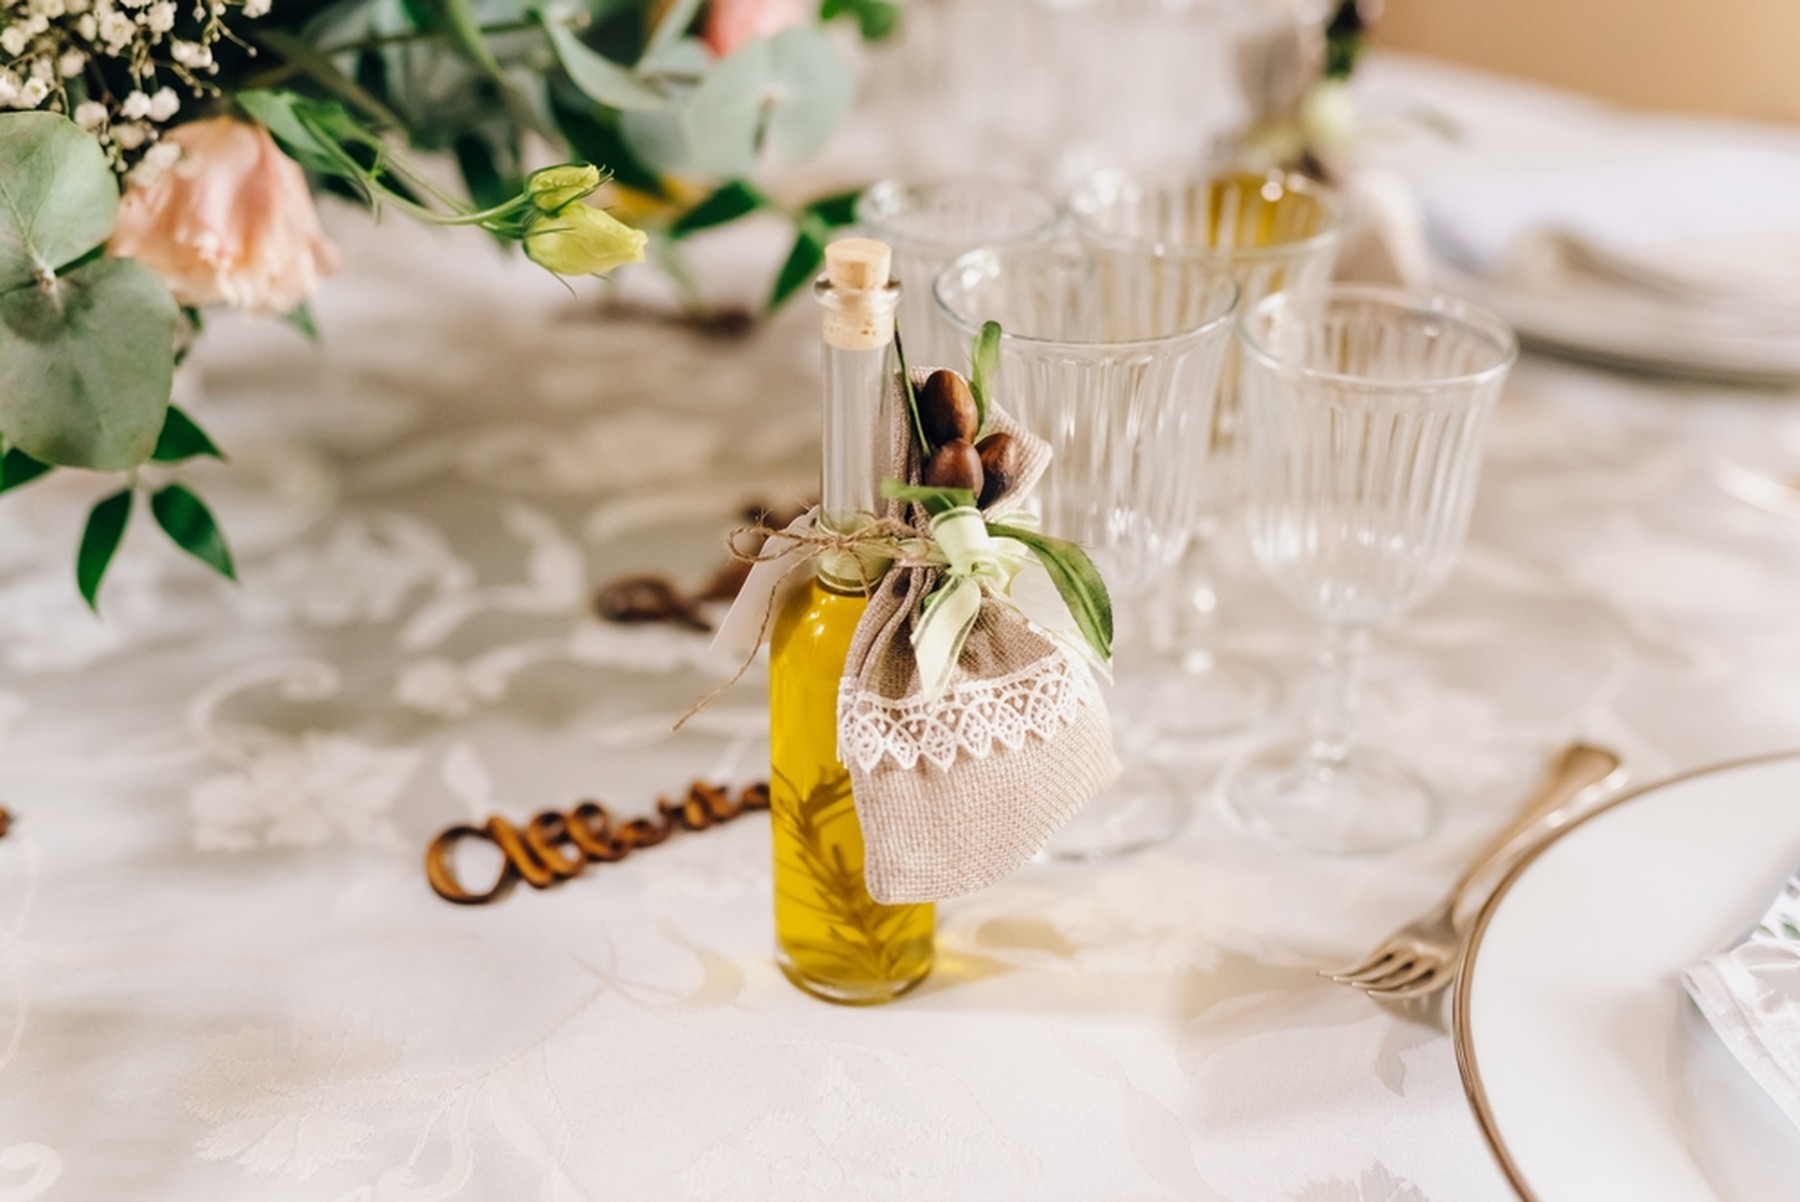 Botellita de aceite con un adorno de tela y plantas. Está encima de una mesa con mantel blanco, copas de cristal y flores